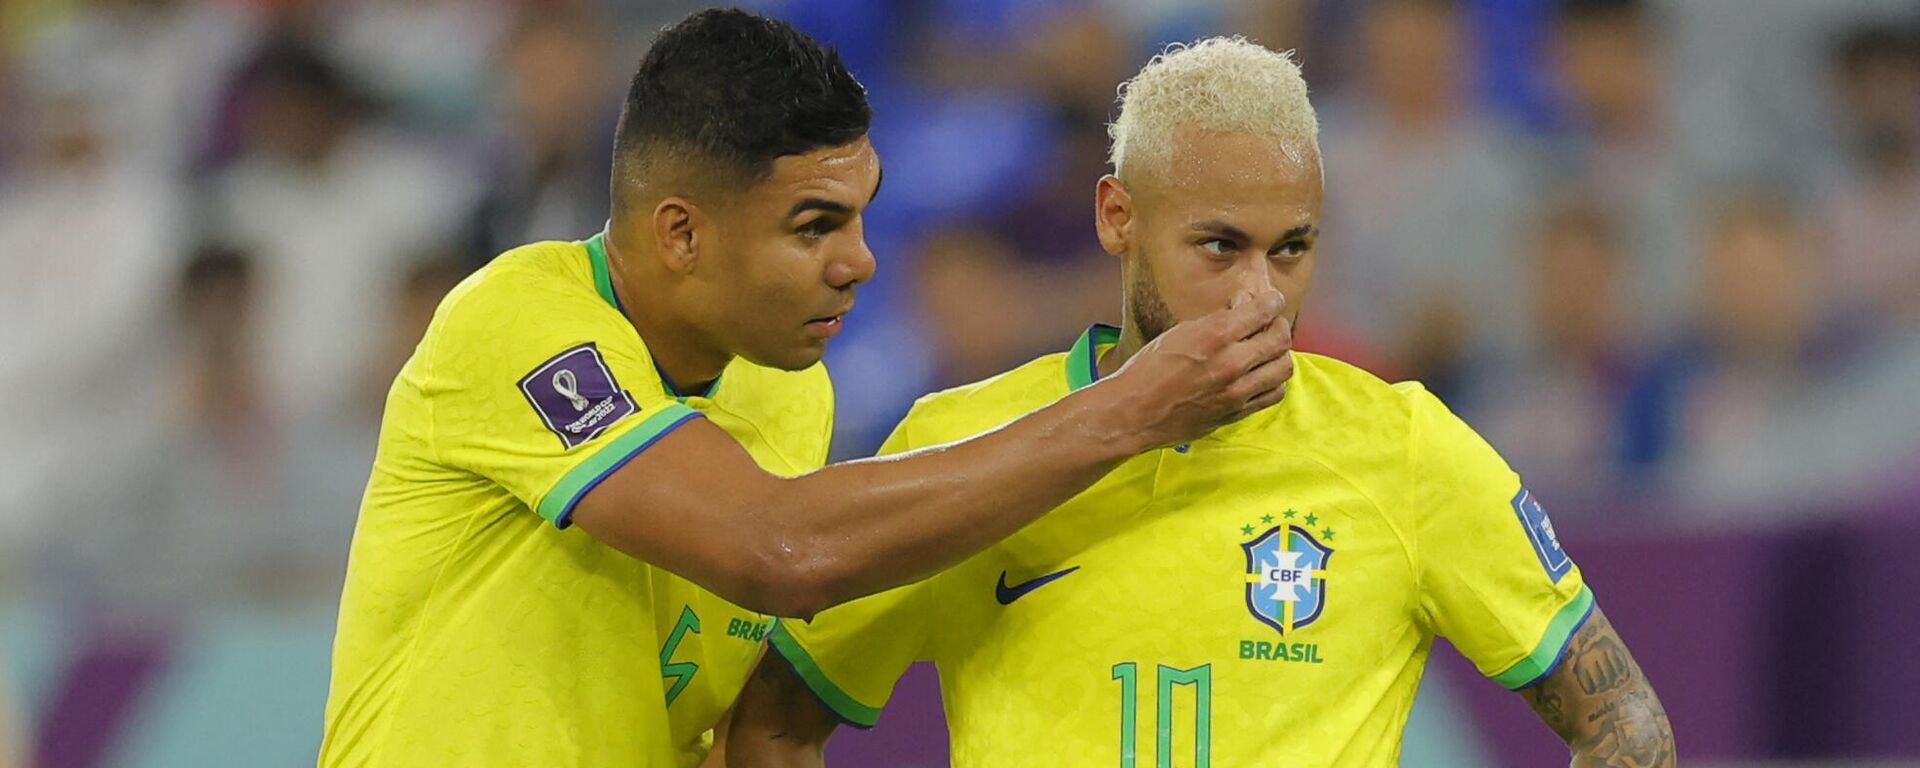 Casemiro y Neymar en el partido de Brasil ante Corea del Sur en Catar 2022 - Sputnik Mundo, 1920, 06.12.2022